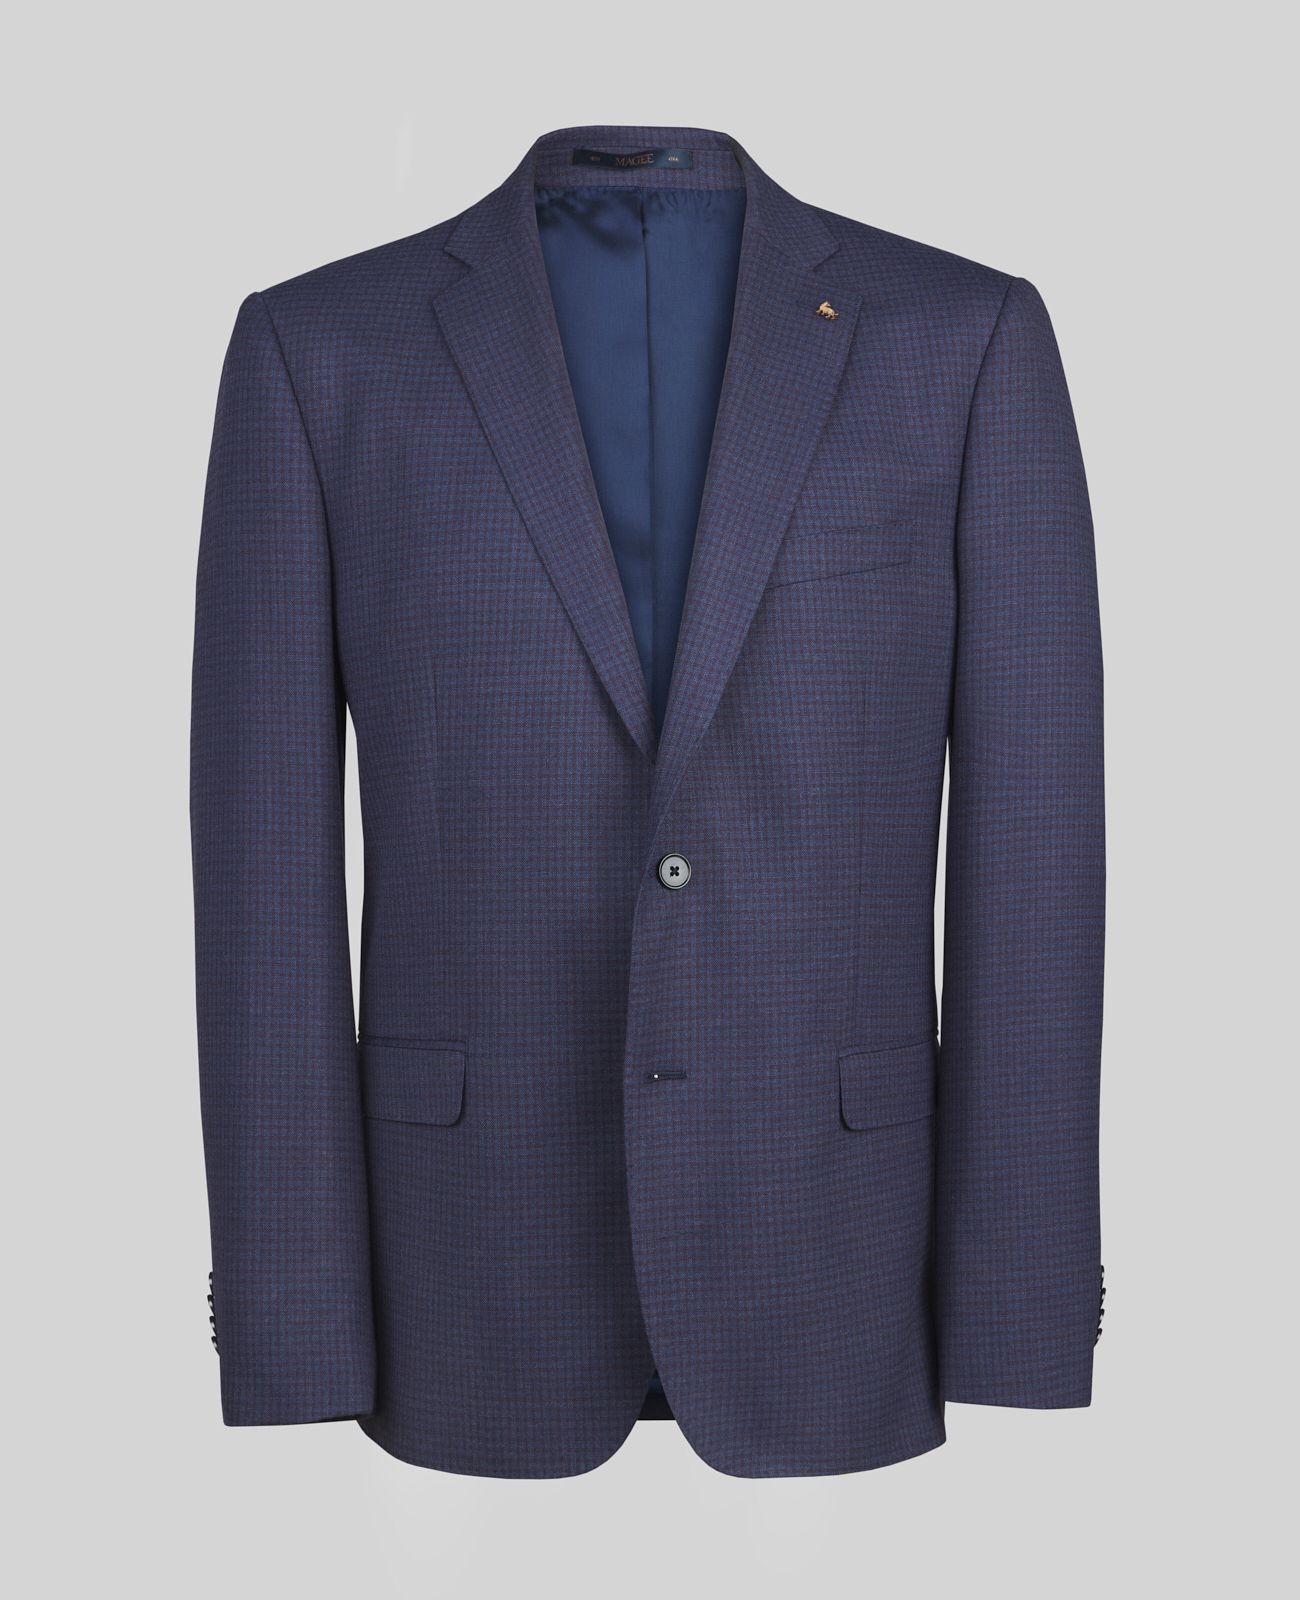 Clady T2 2pce Suit